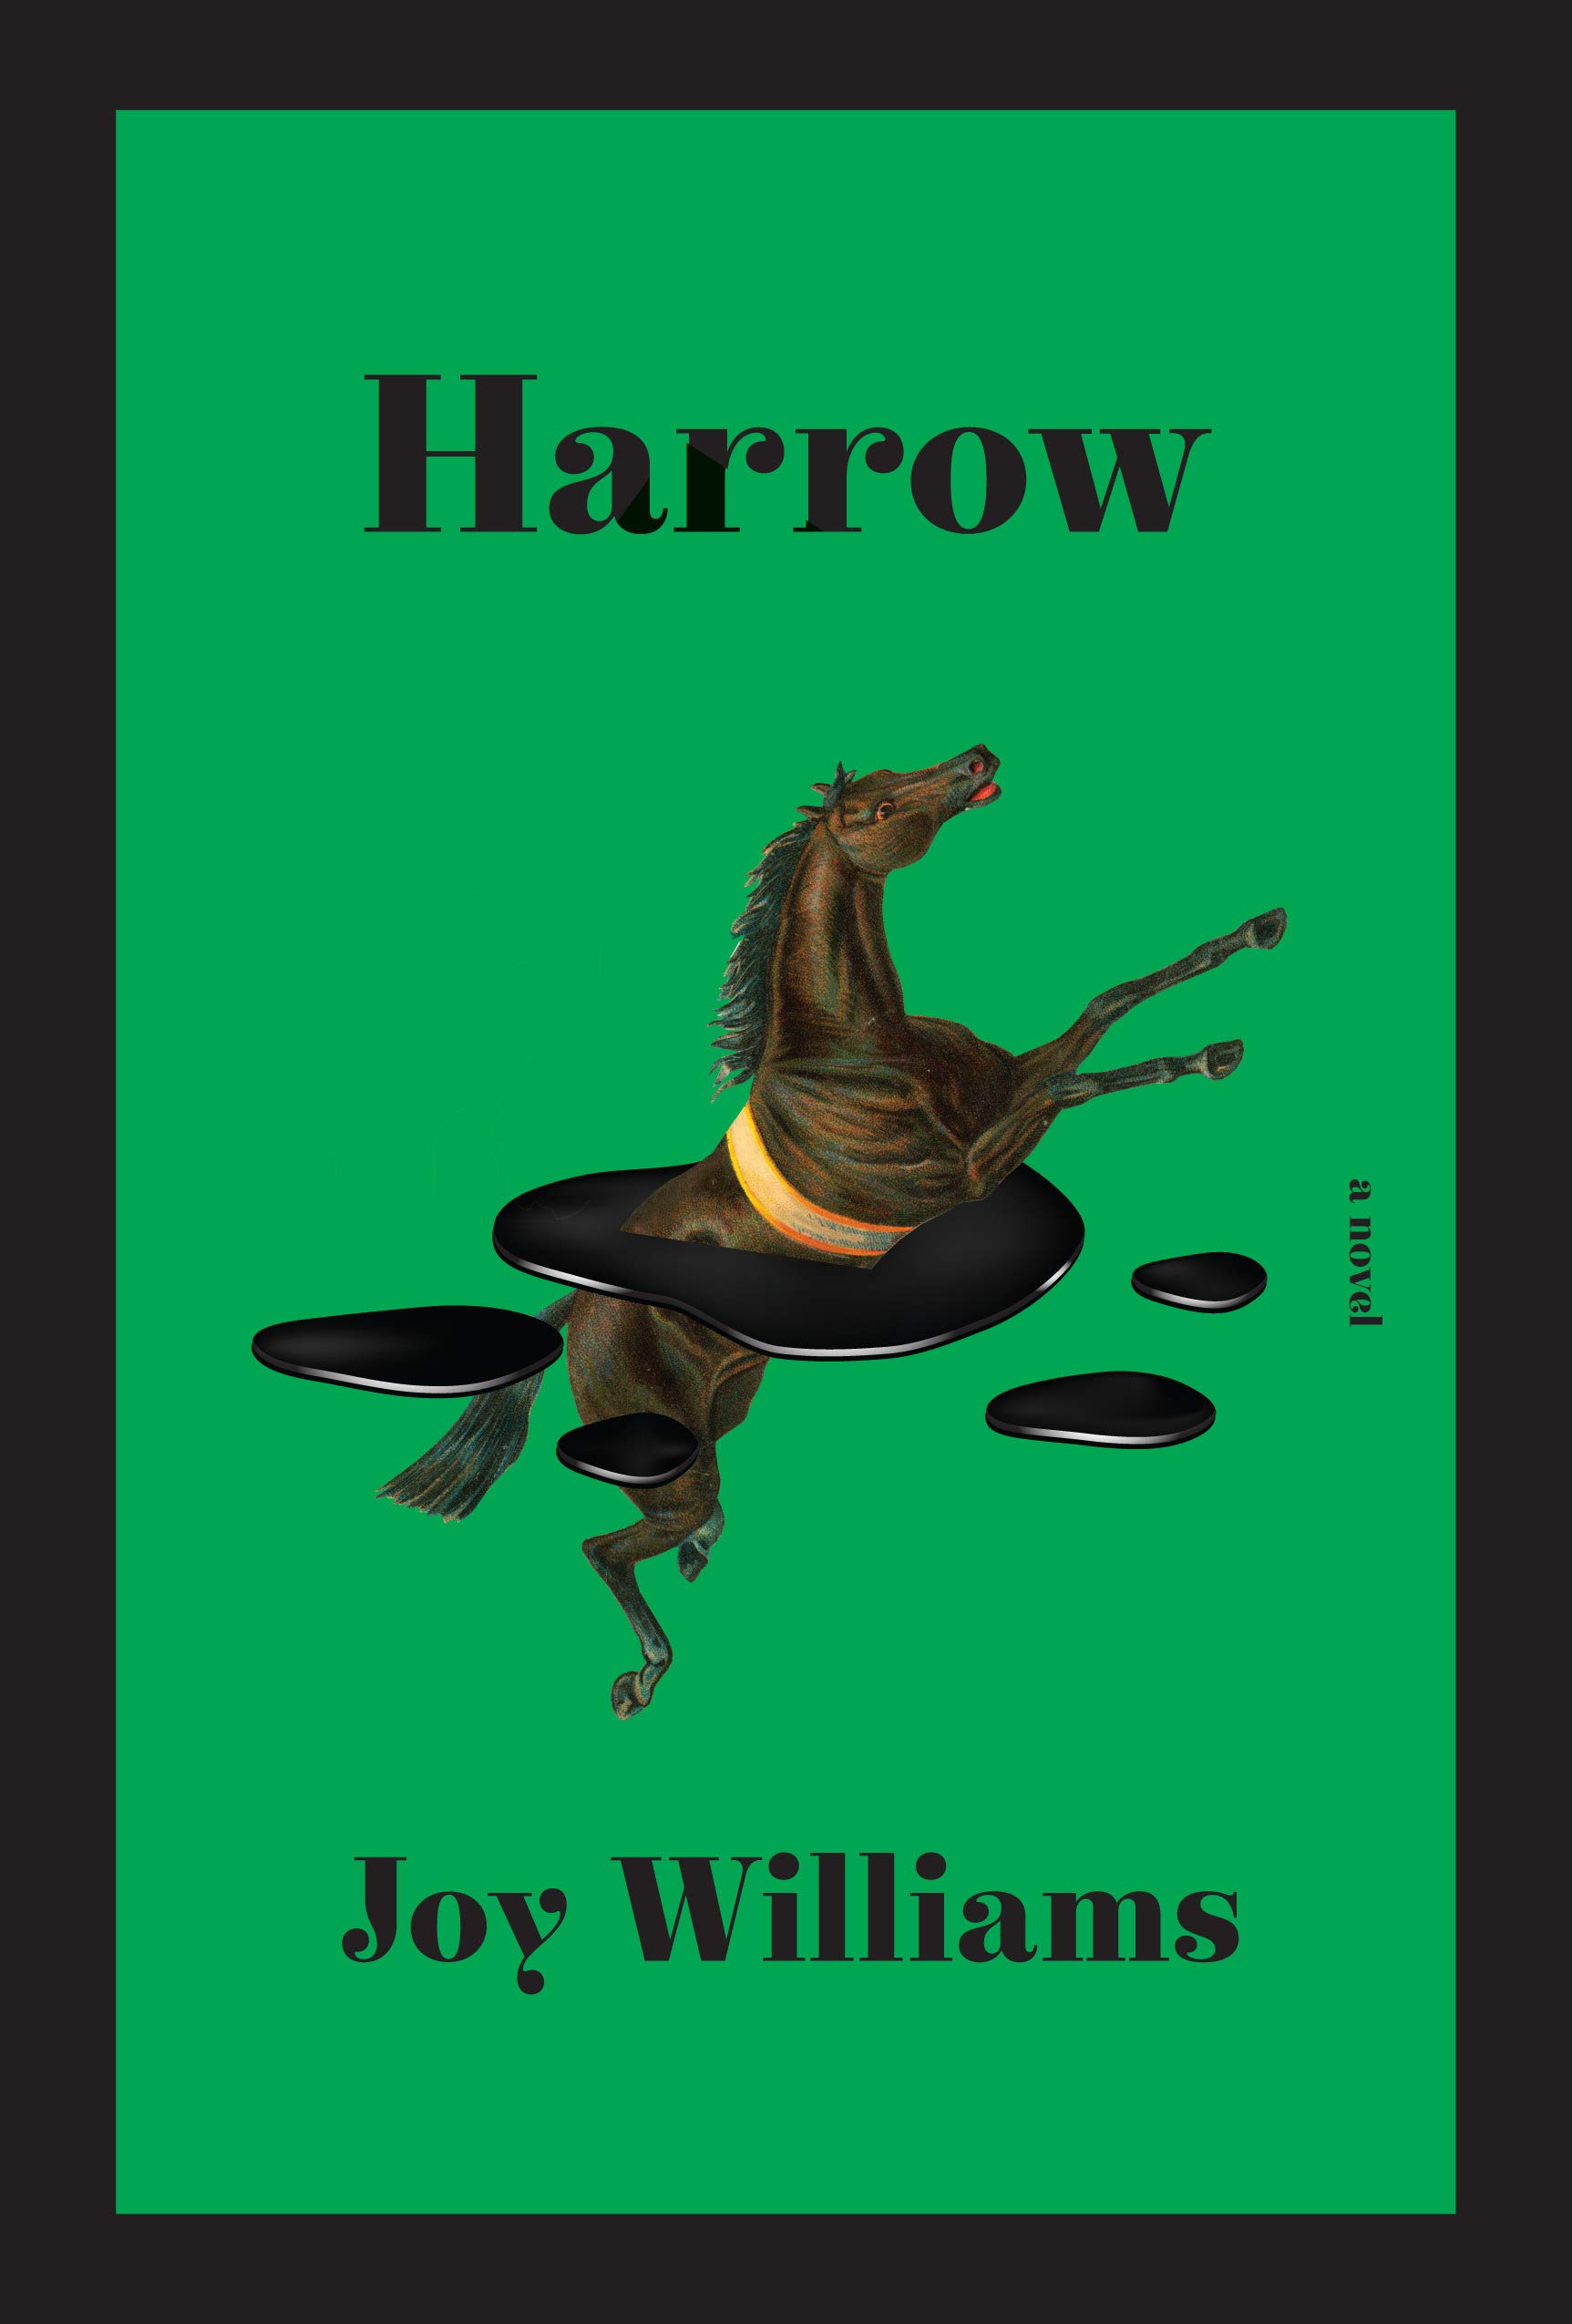 The cover of Harrow: A novel